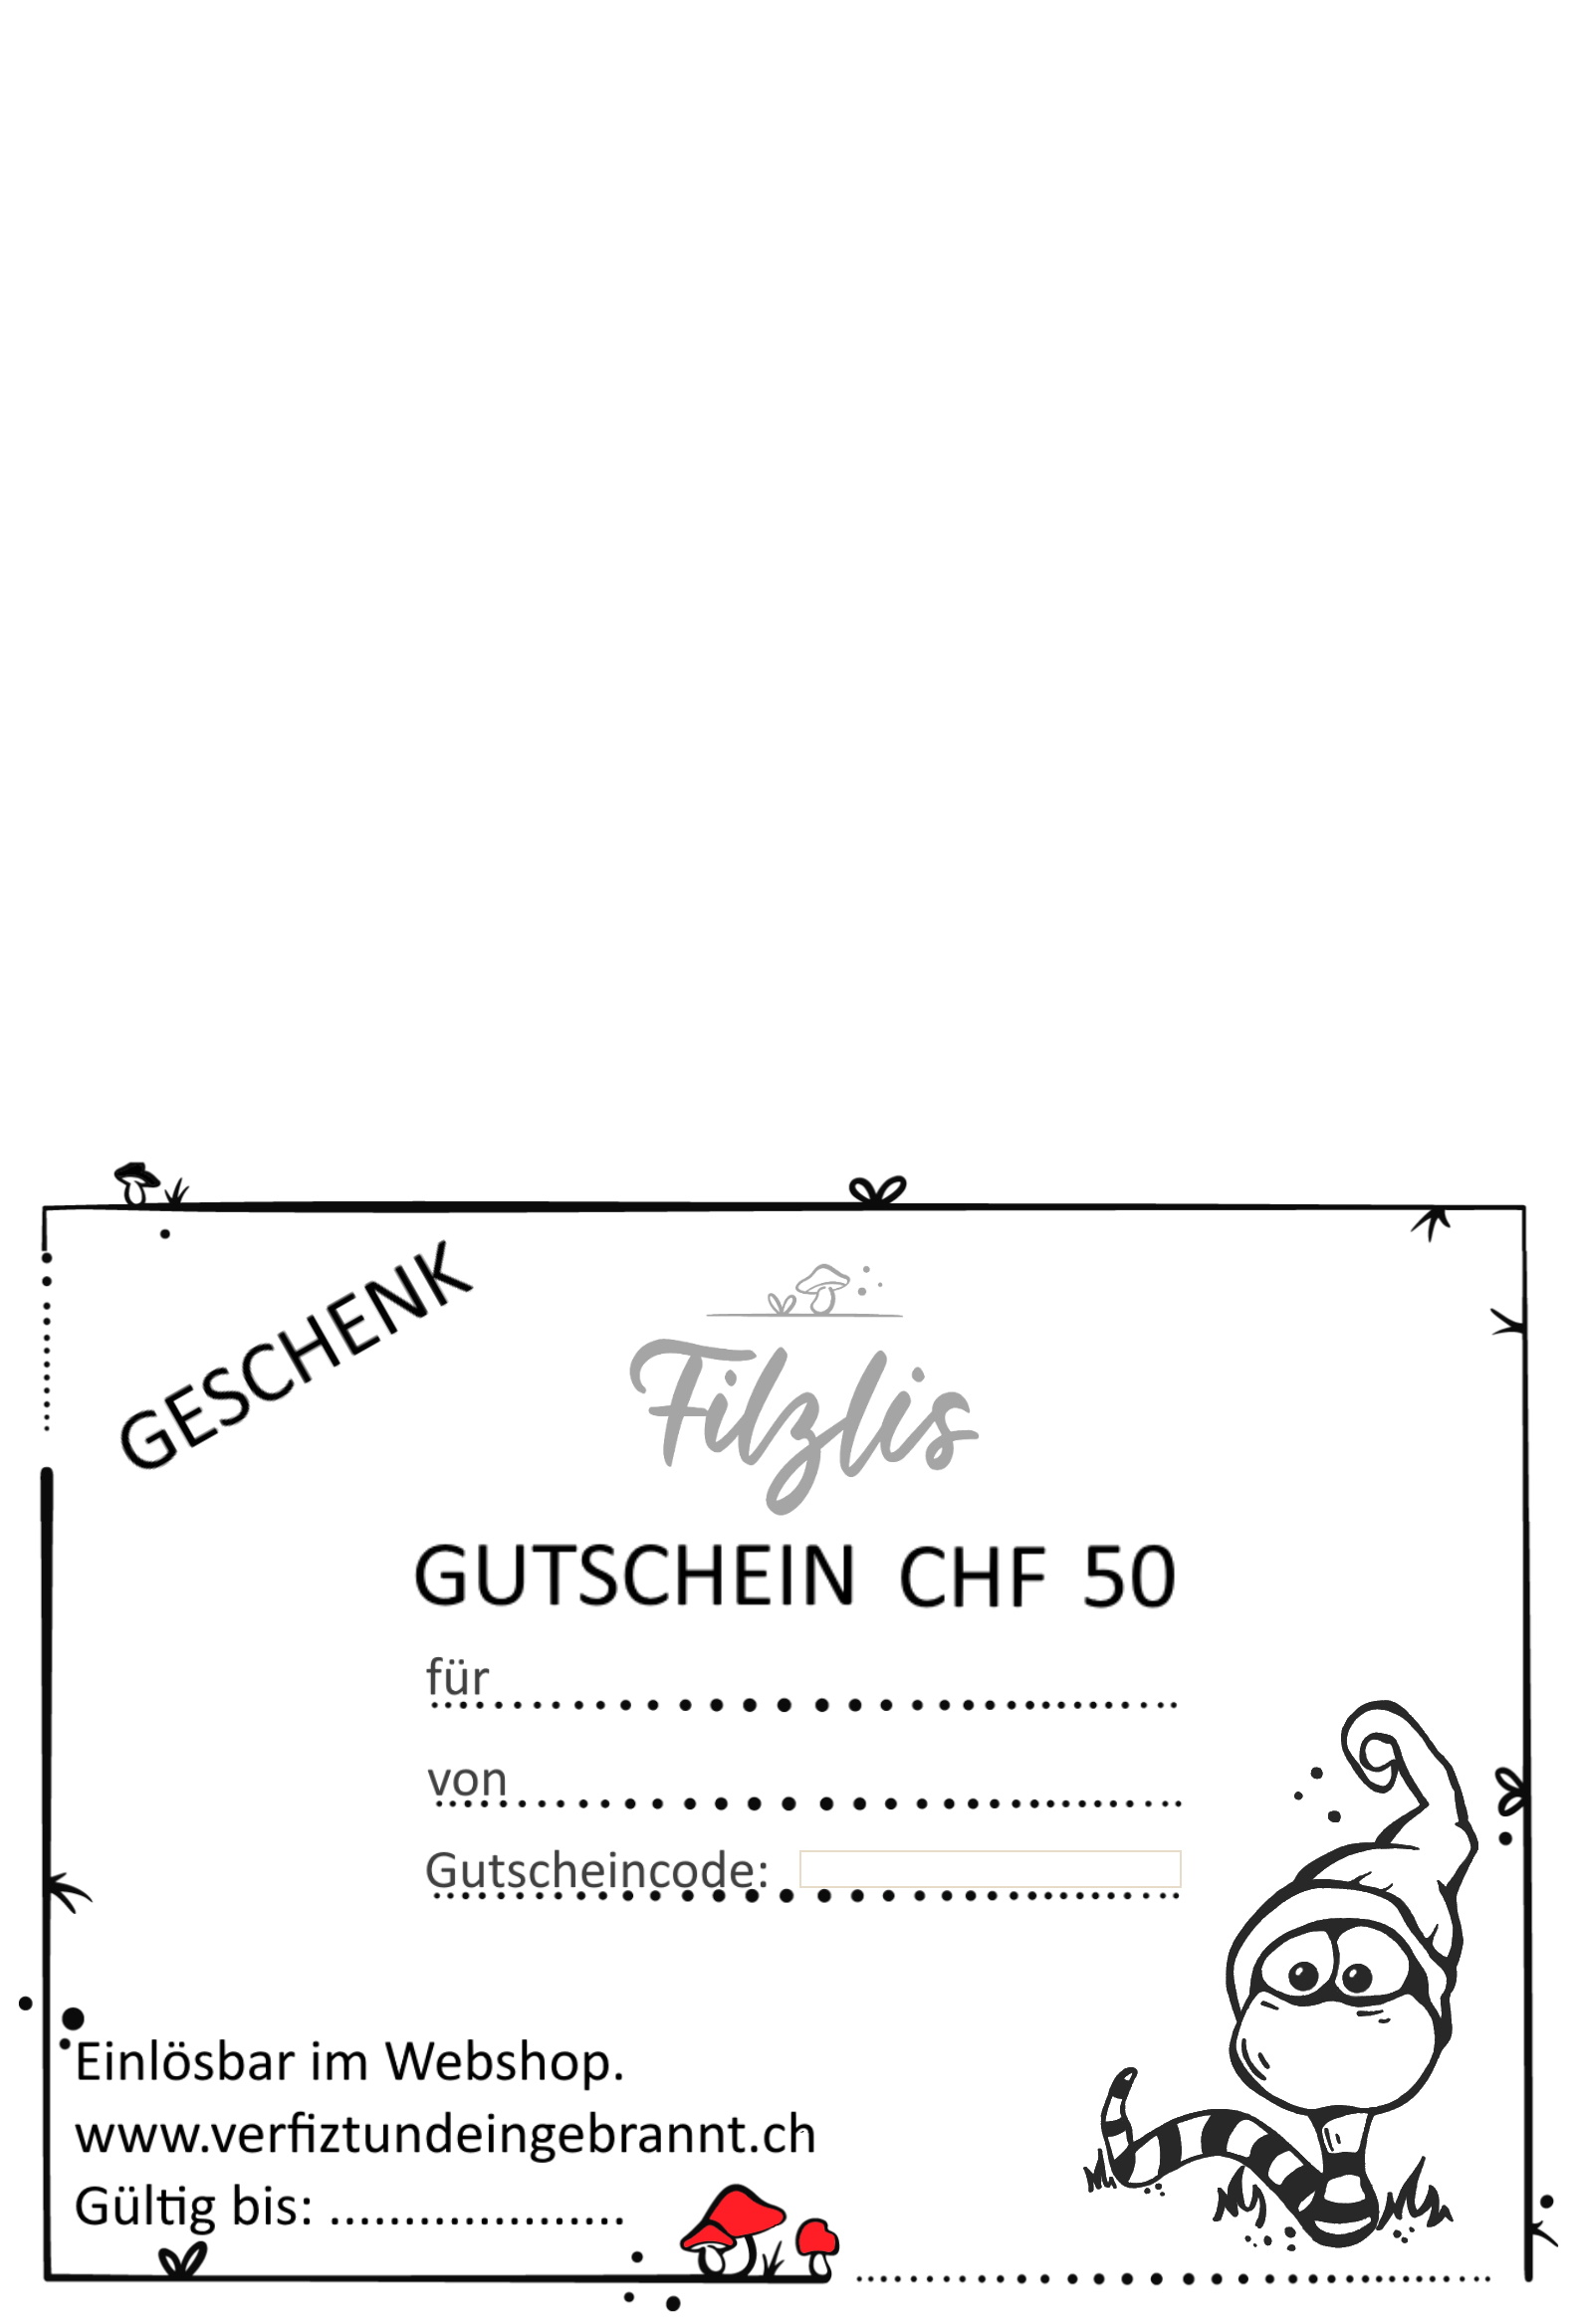 Gutschein "Filzlis" CHF 50.--